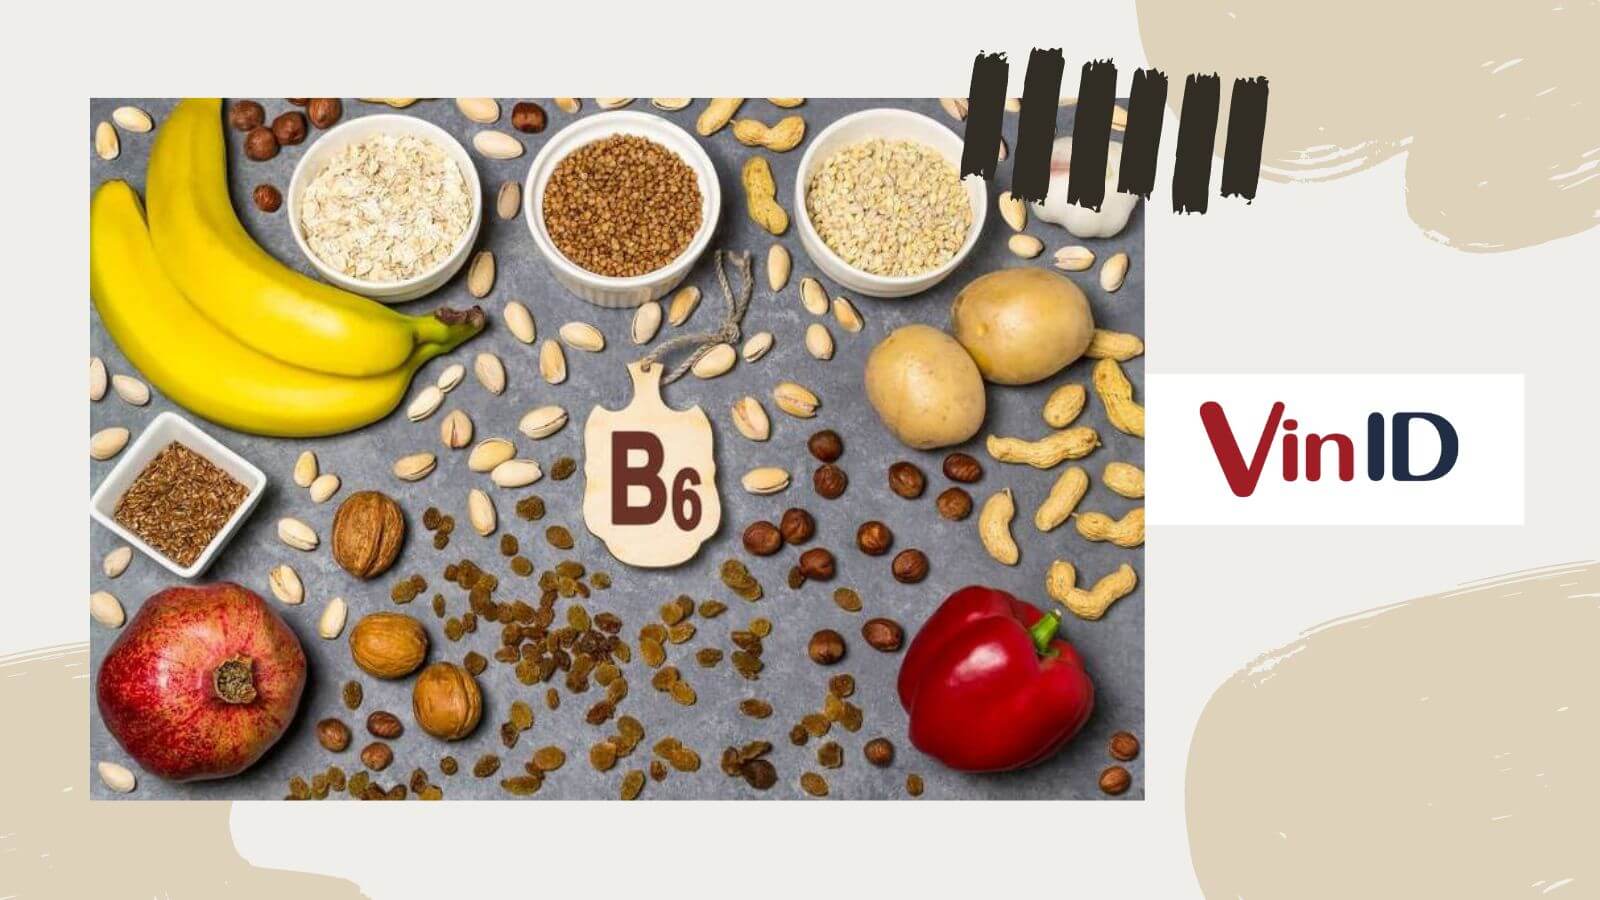 Quy trình hấp thụ và chuyển hóa vitamin B6 trong cơ thể như thế nào?
